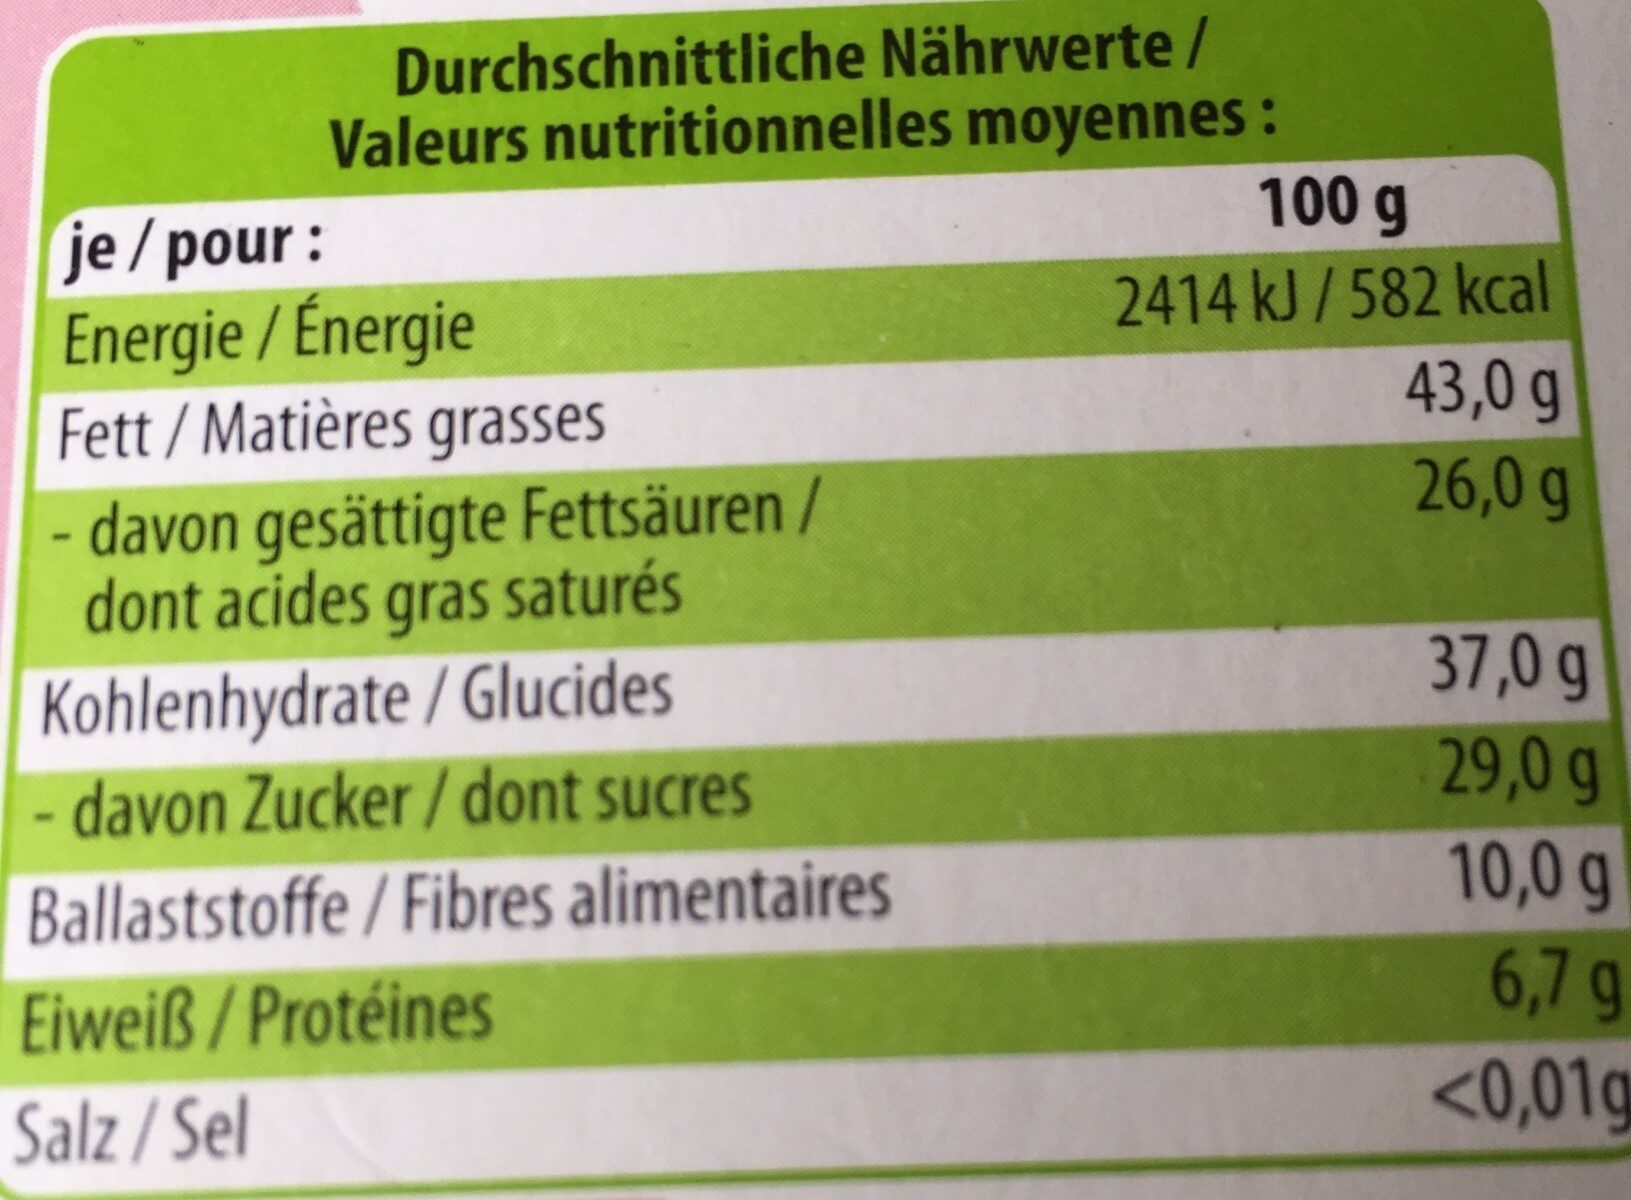 Schweizer bio-schokolade dunkel - Nährwertangaben